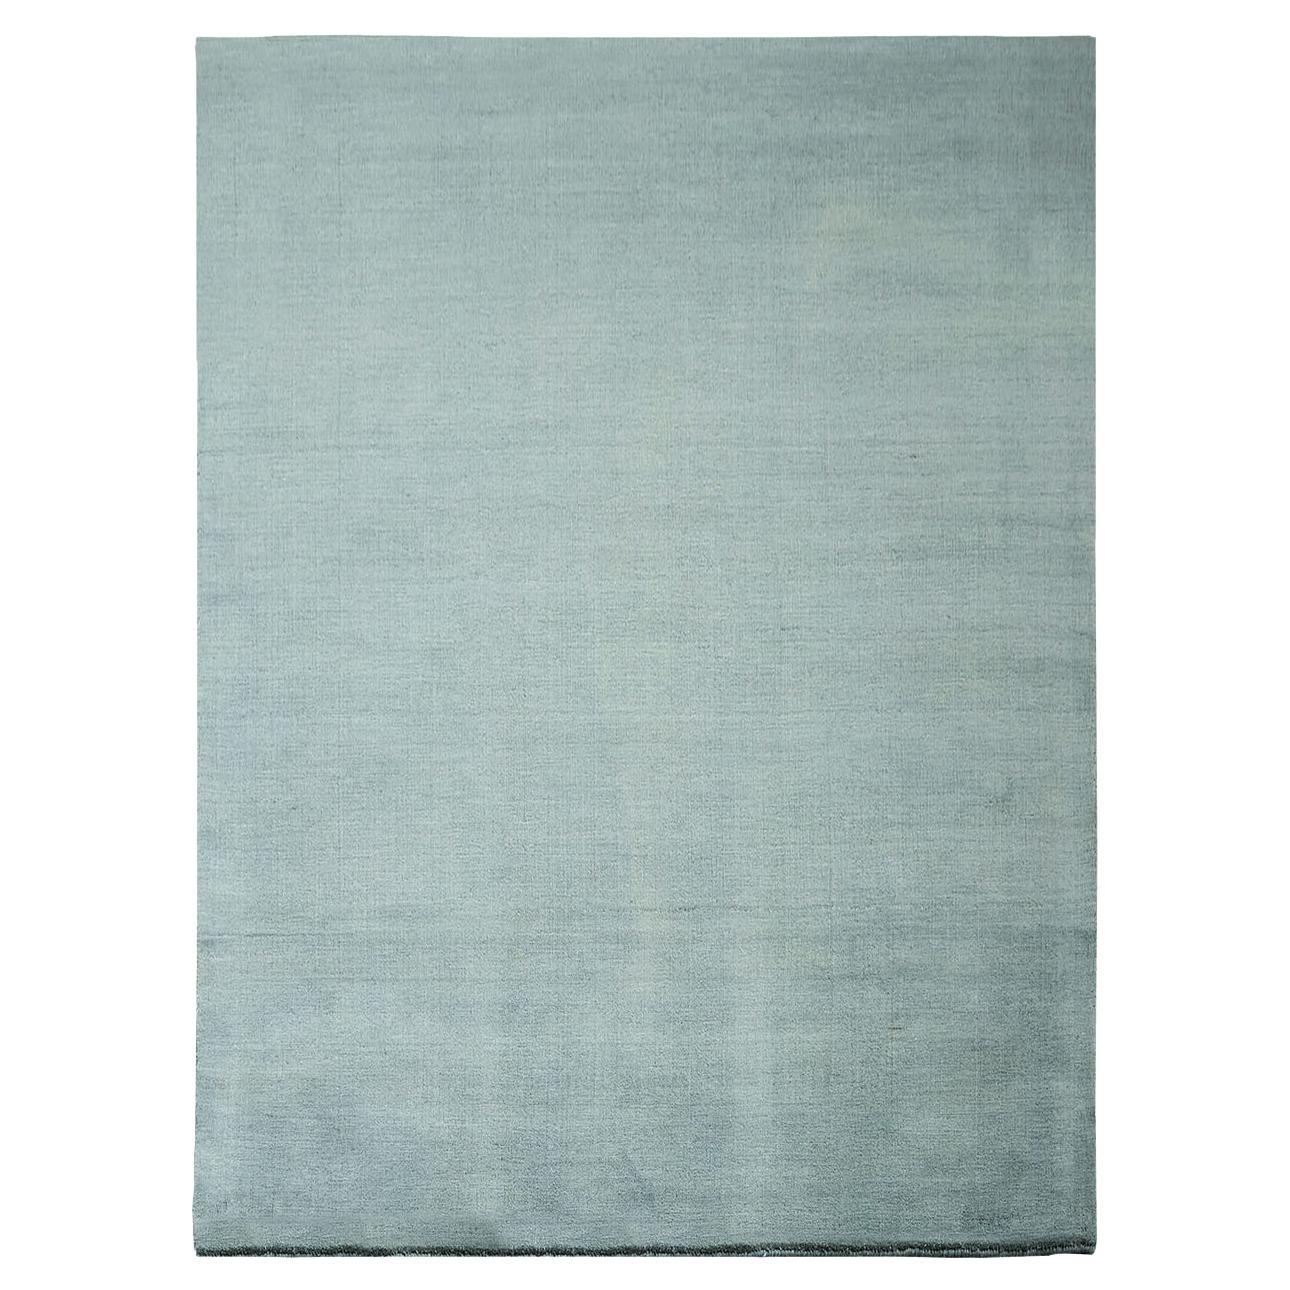 Verte Grey Earth Carpet by Massimo Copenhagen For Sale